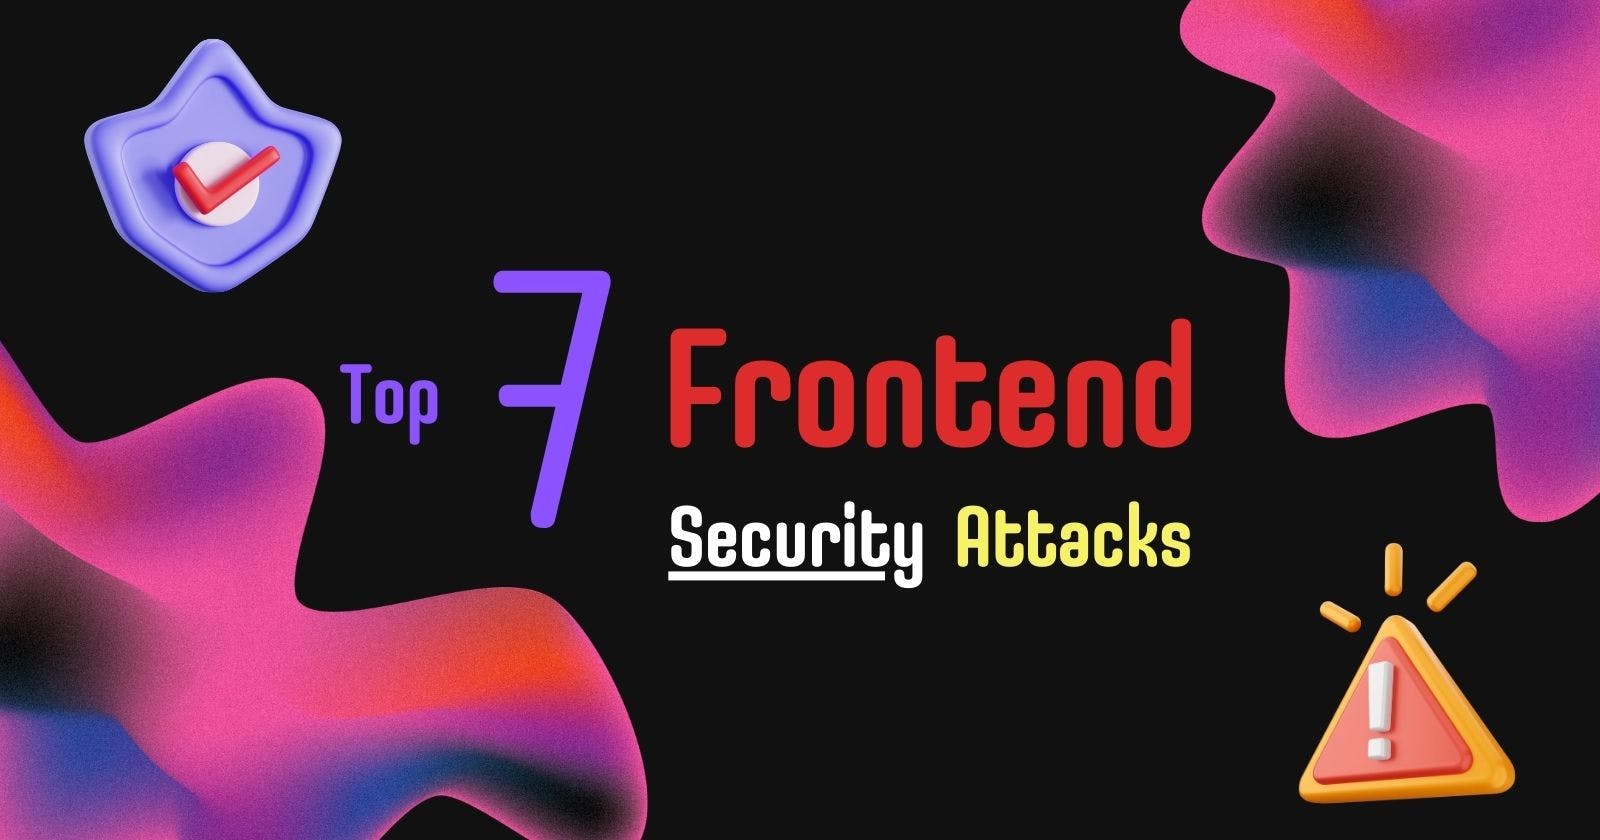 Understanding the Top 7 Frontend Security Attacks